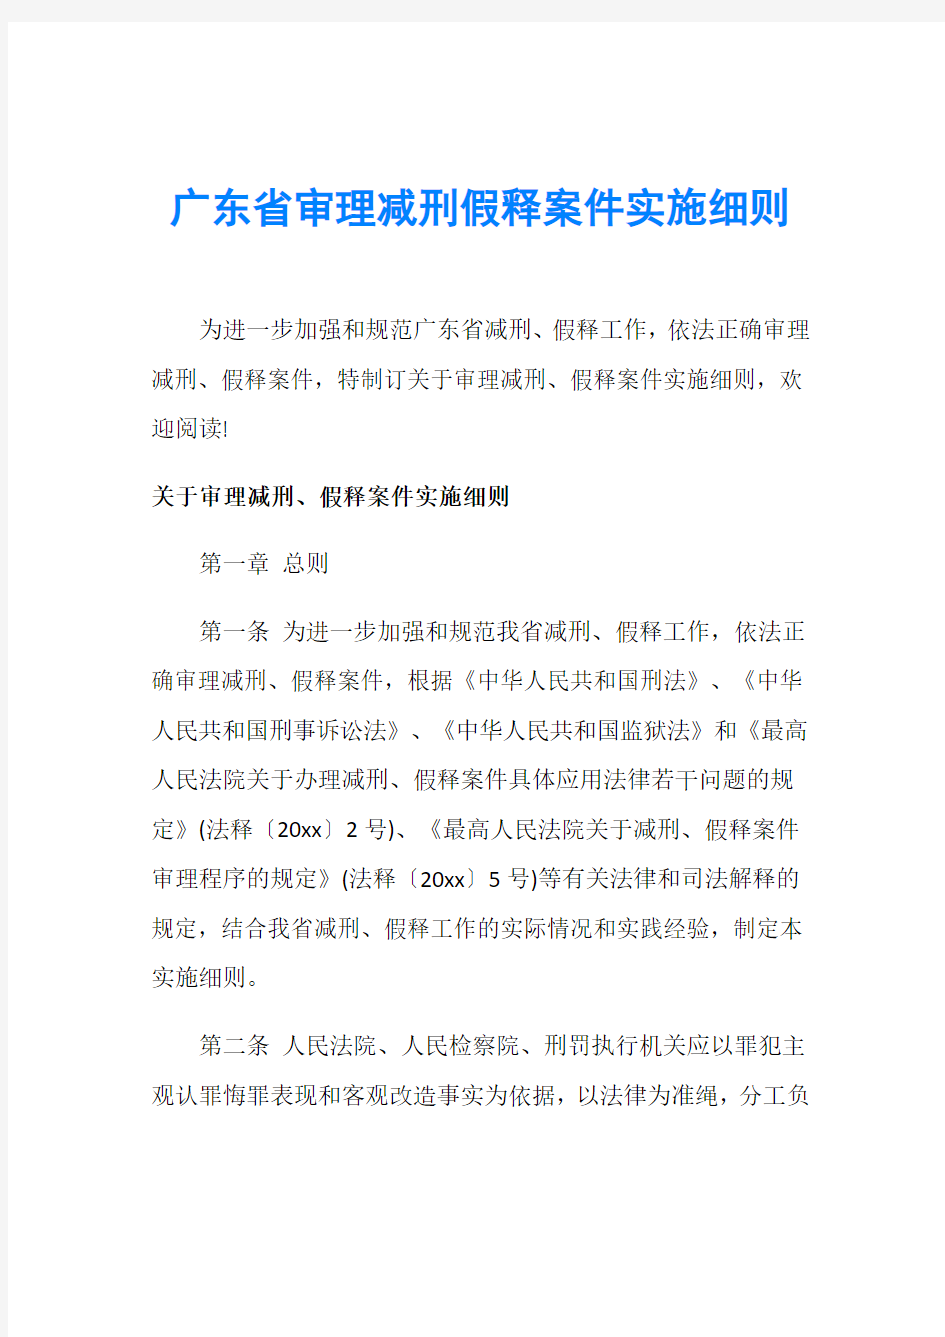 广东省审理减刑假释案件实施细则